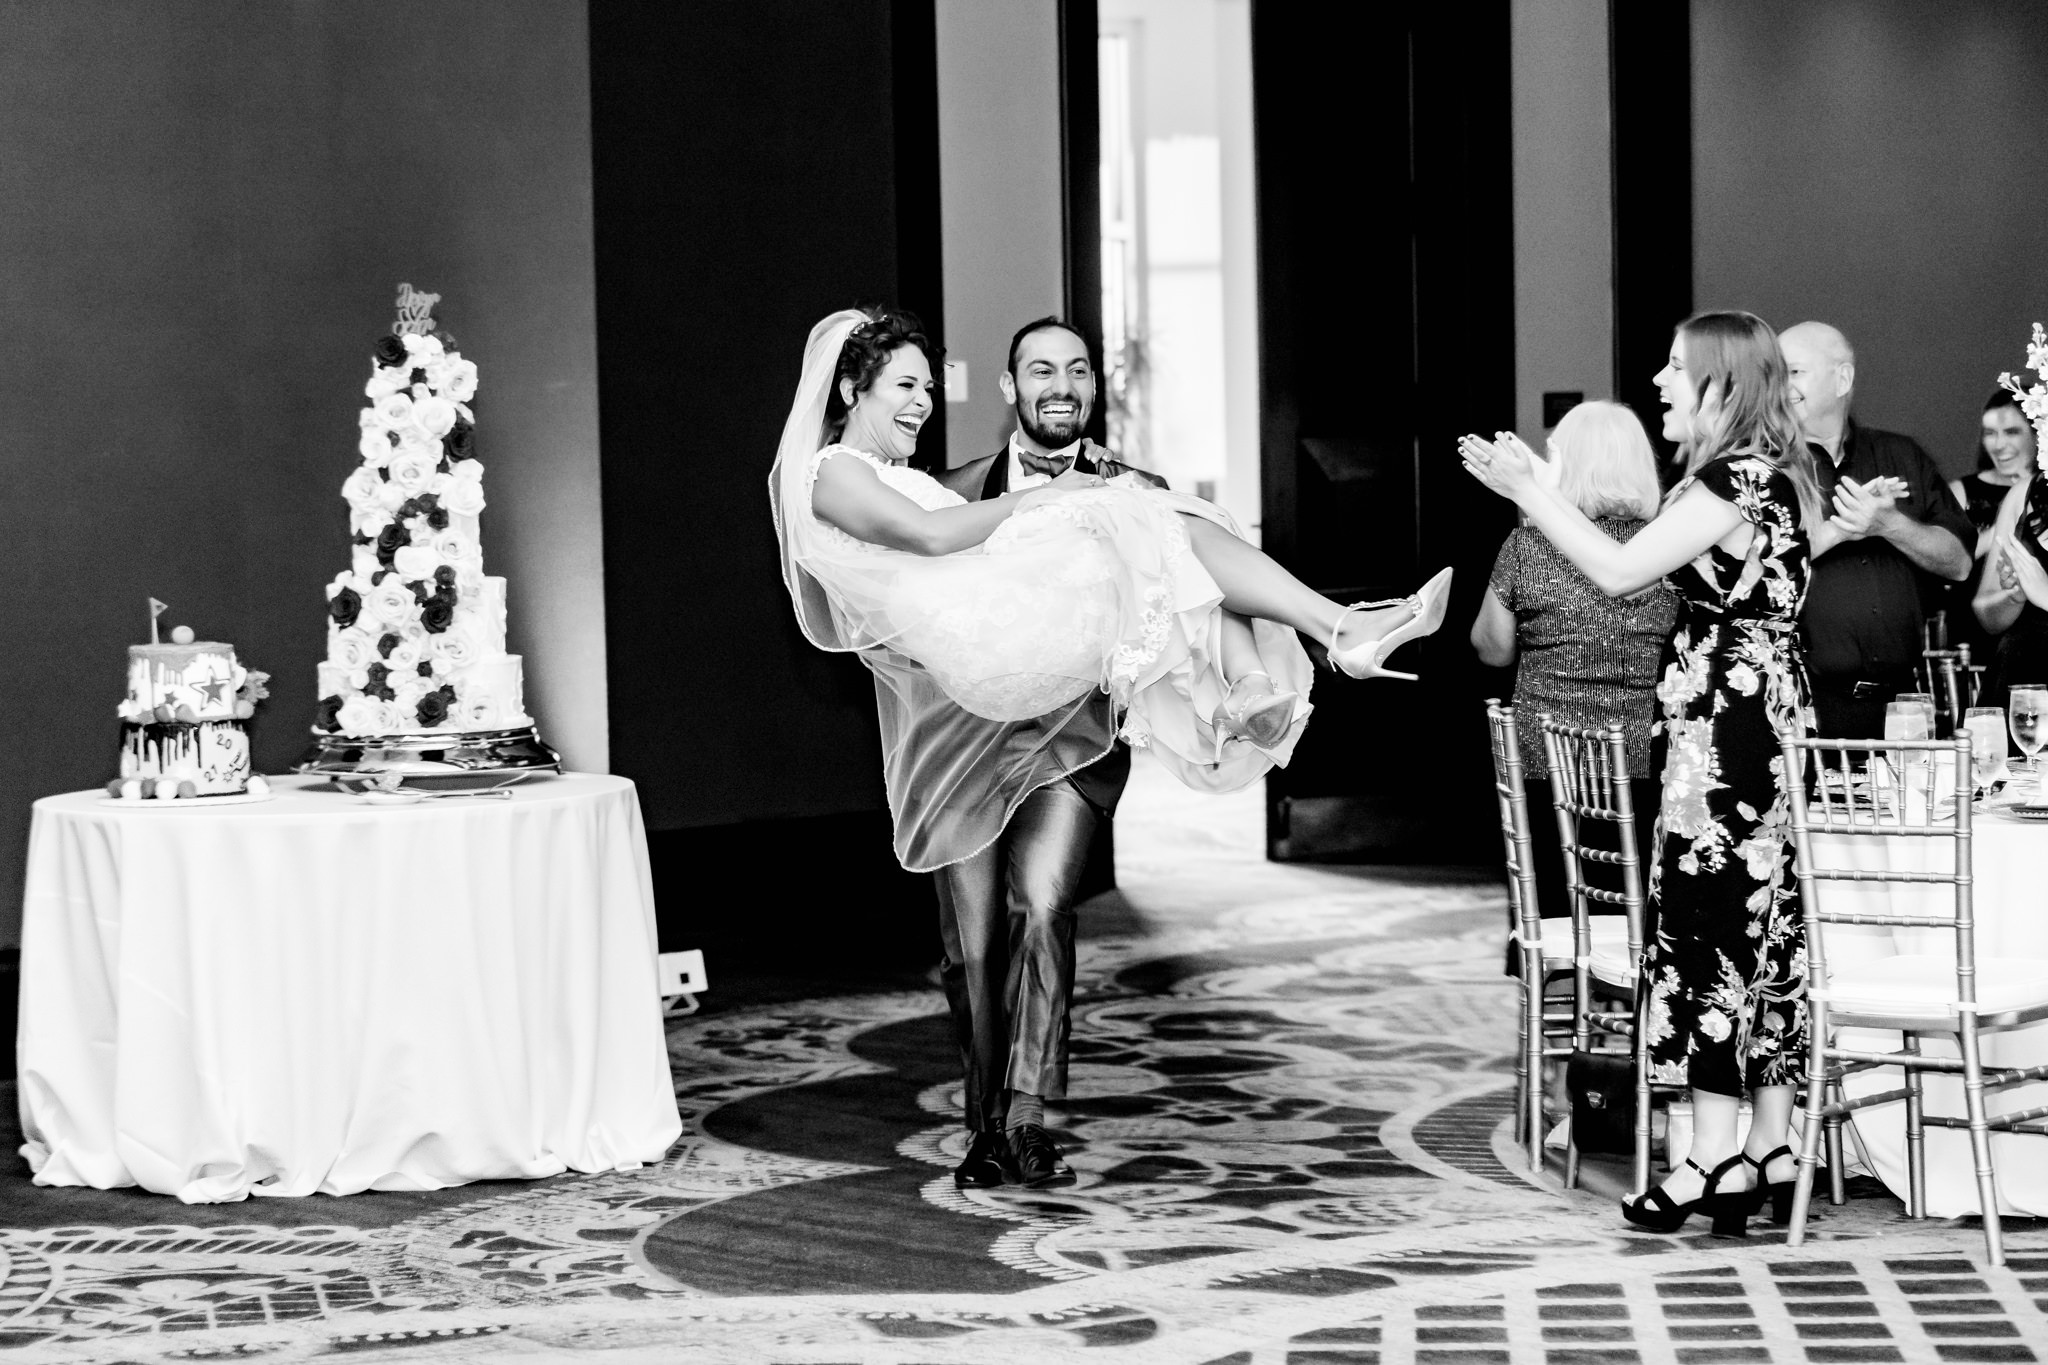 A Burgundy and Ivory Wedding at La Cantera Resort by Dawn Elizabeth Studios, San Antonio Wedding Photographer